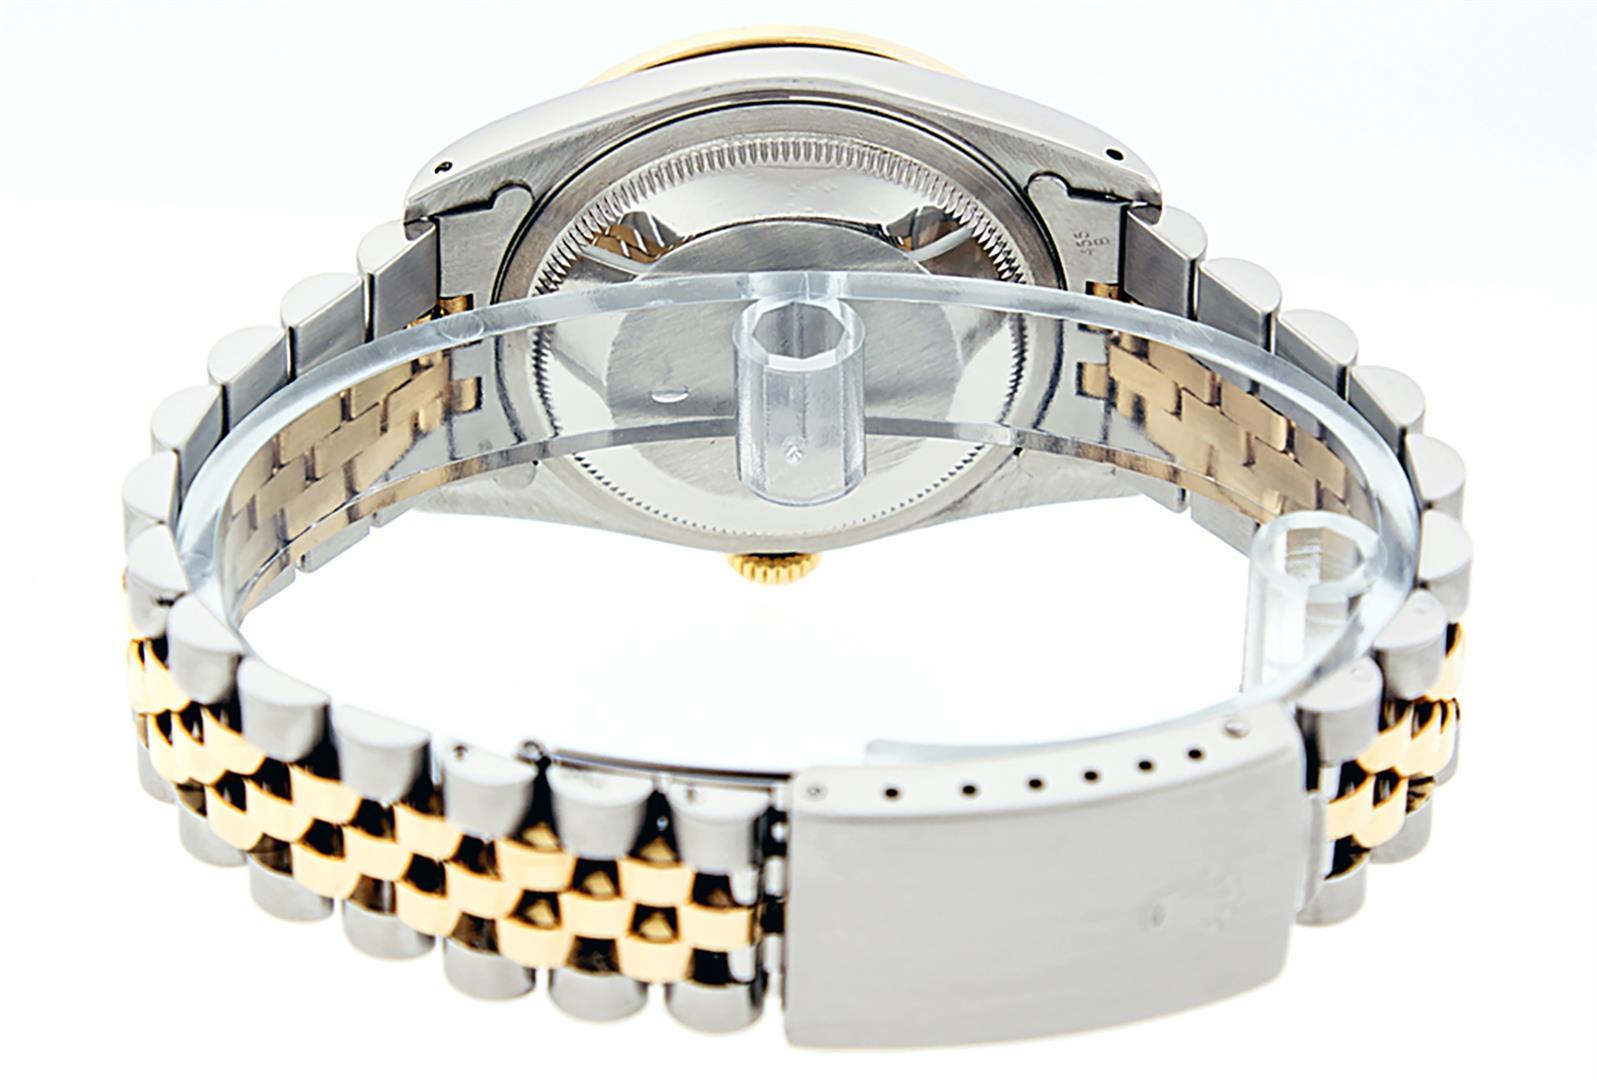 Rolex Mens Two Tone Blue Vignette Diamond & Sapphire Datejust Wristwatch 36MM